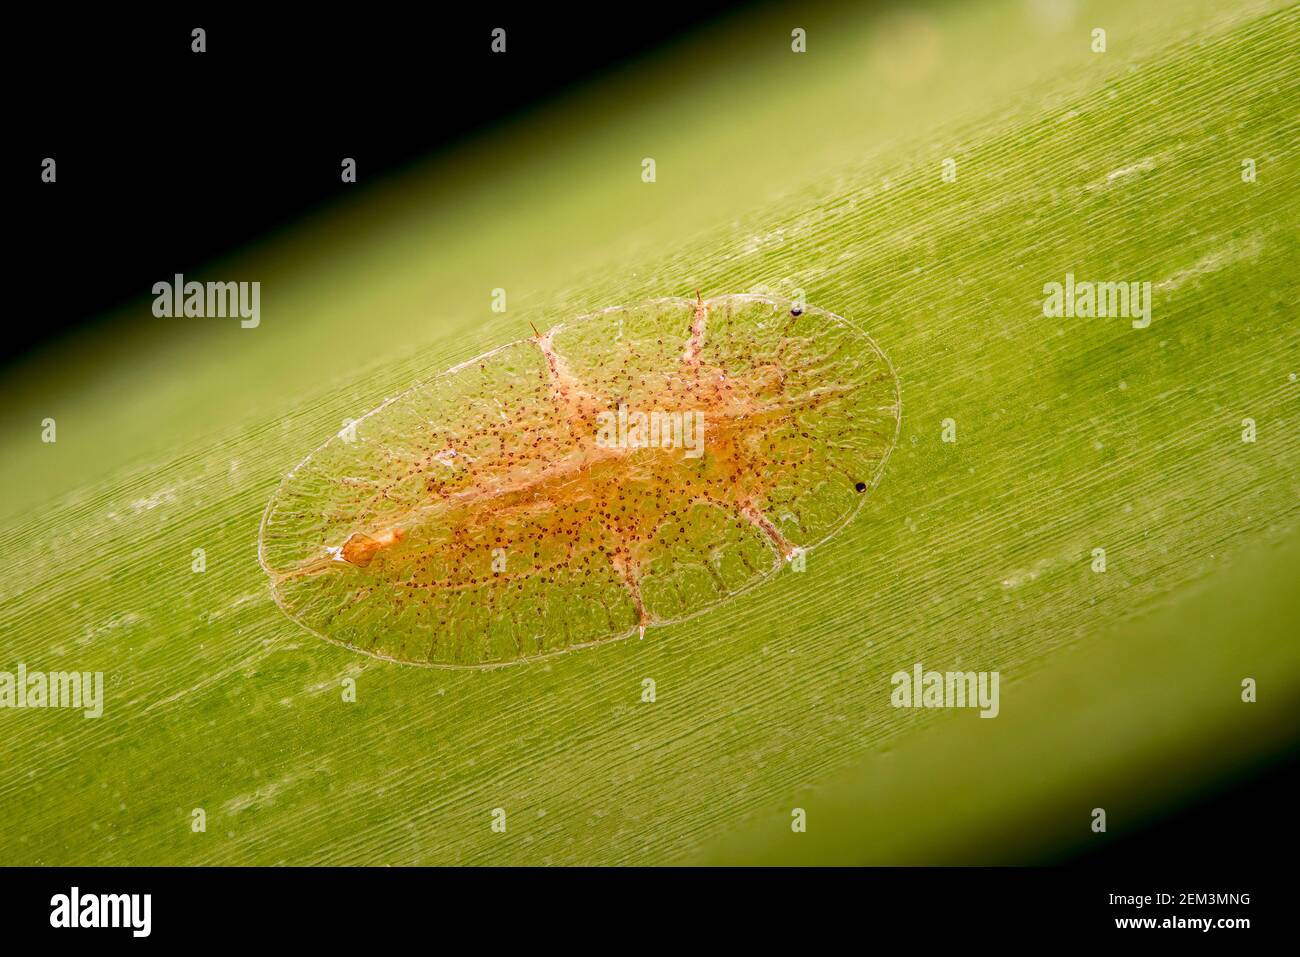 Kalk Insekten und Mehly Bugs (Coccoidea), Fluoreszenzbild, Lichtmikroskop Bild, Vergrößerung x16 bezogen auf 35 mm, Deutschland Stockfoto